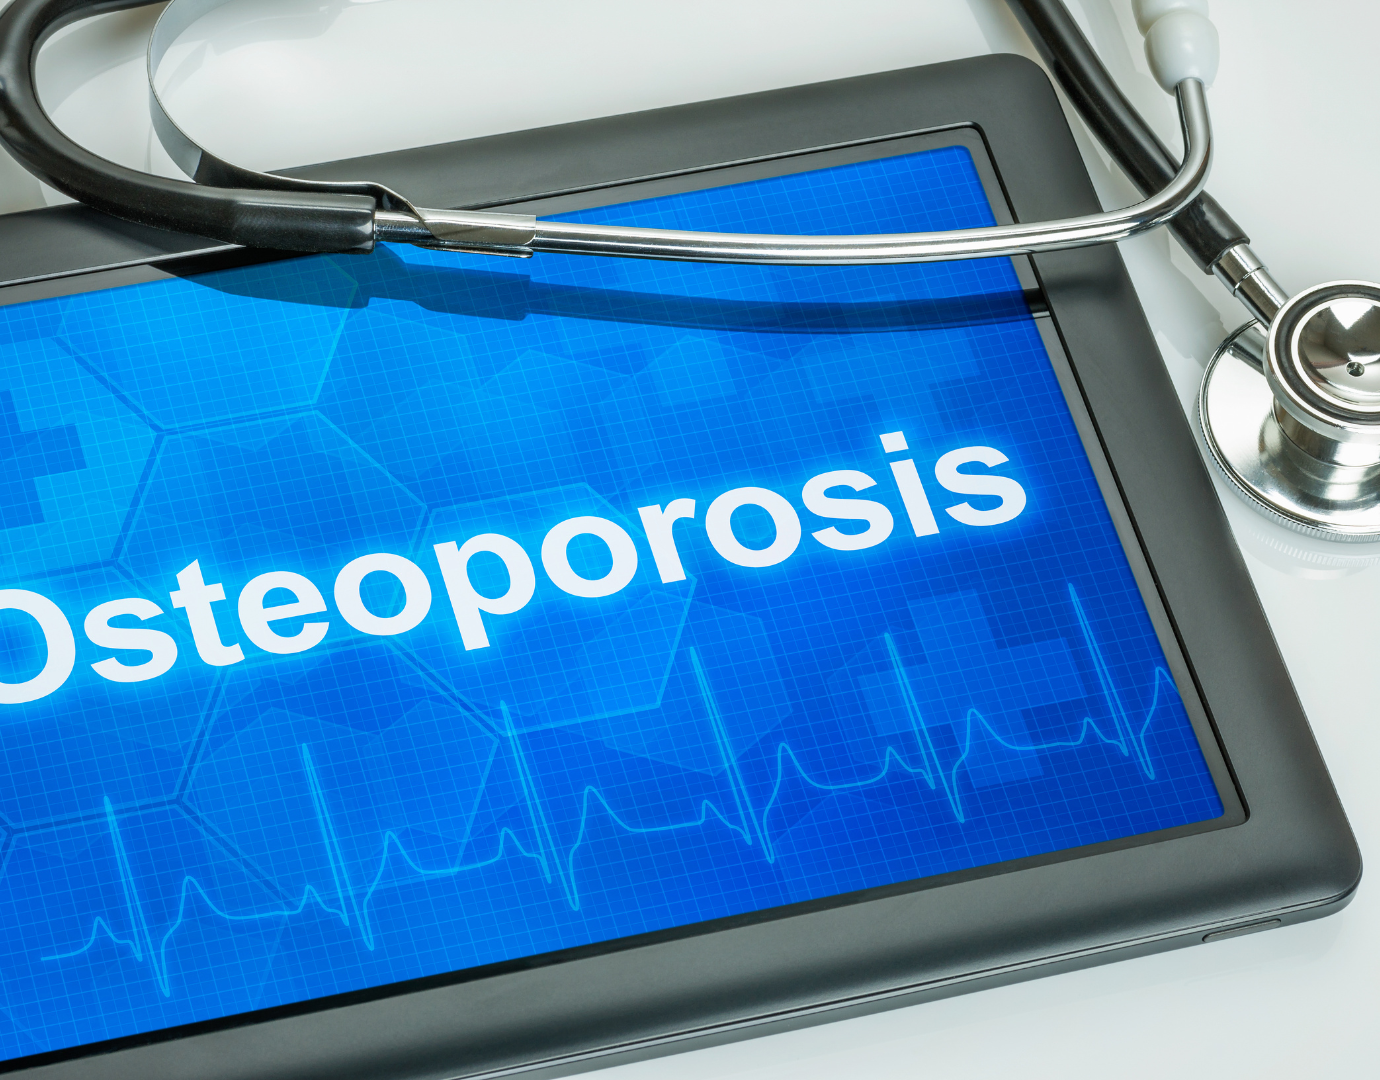 Θεραπεία Οστεοπόρωσης: Η Ελλιπής Αξιολόγηση των Δευτερογενών Αιτιών